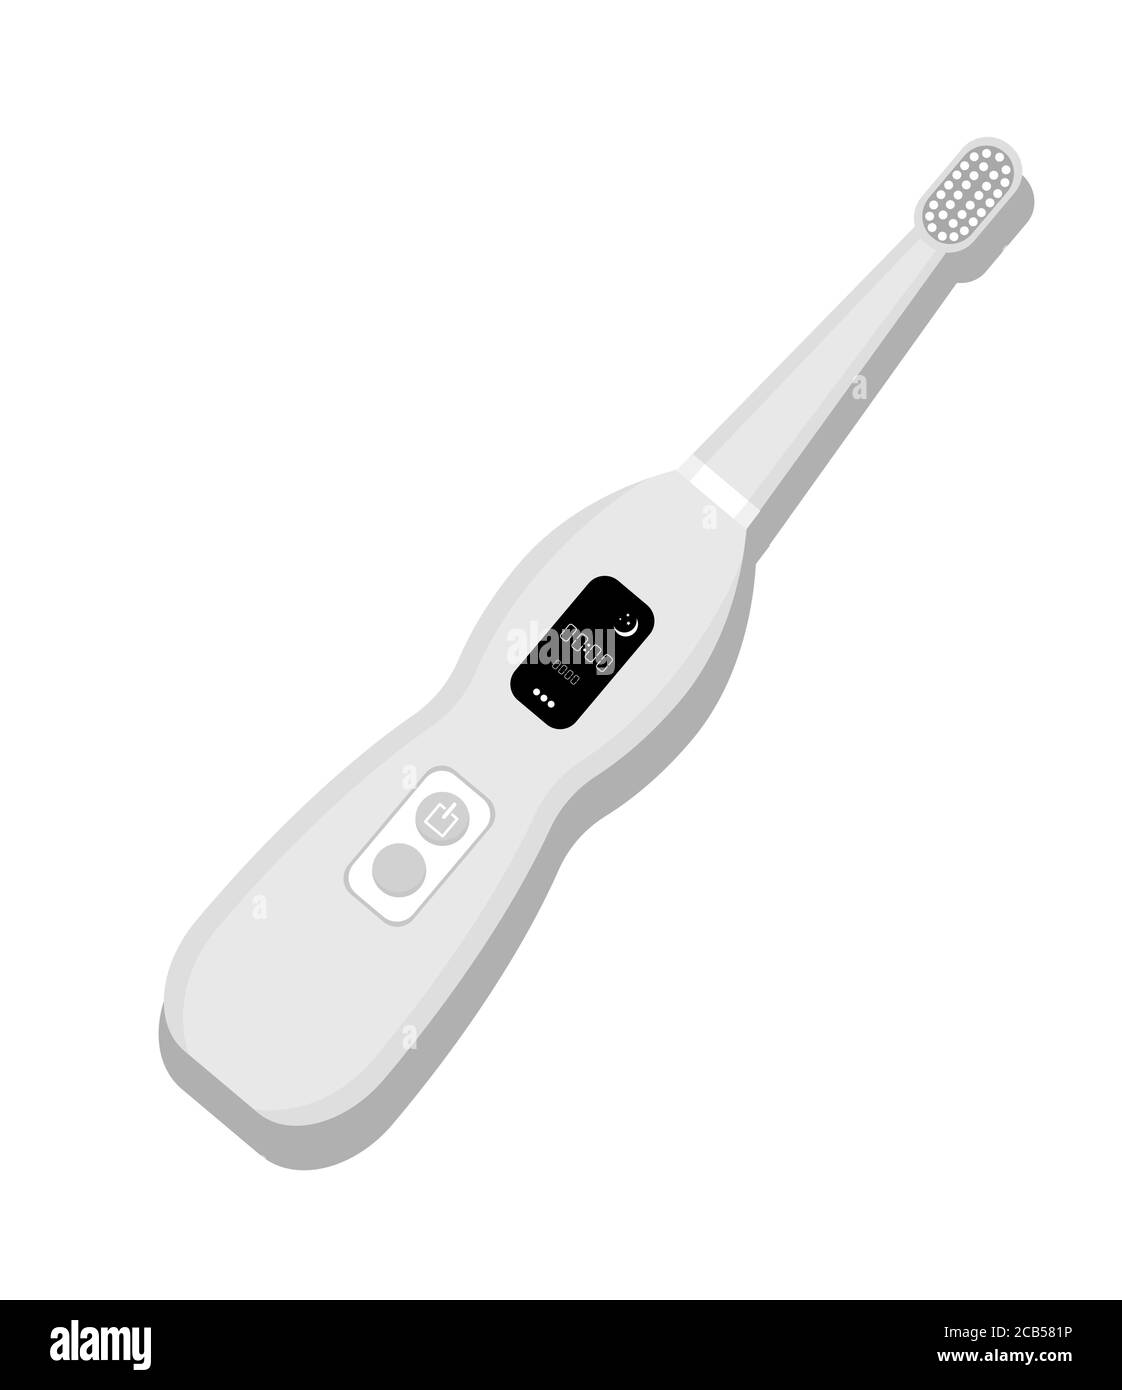 Symbol für elektrische Zahnbürste auf weißem Hintergrund isoliert. Element zum Reinigen der Zähne. Abbildung der Geräte für die Zahnmedizin. Vektor-Zahnpflege-Werkzeug in flach Stock Vektor